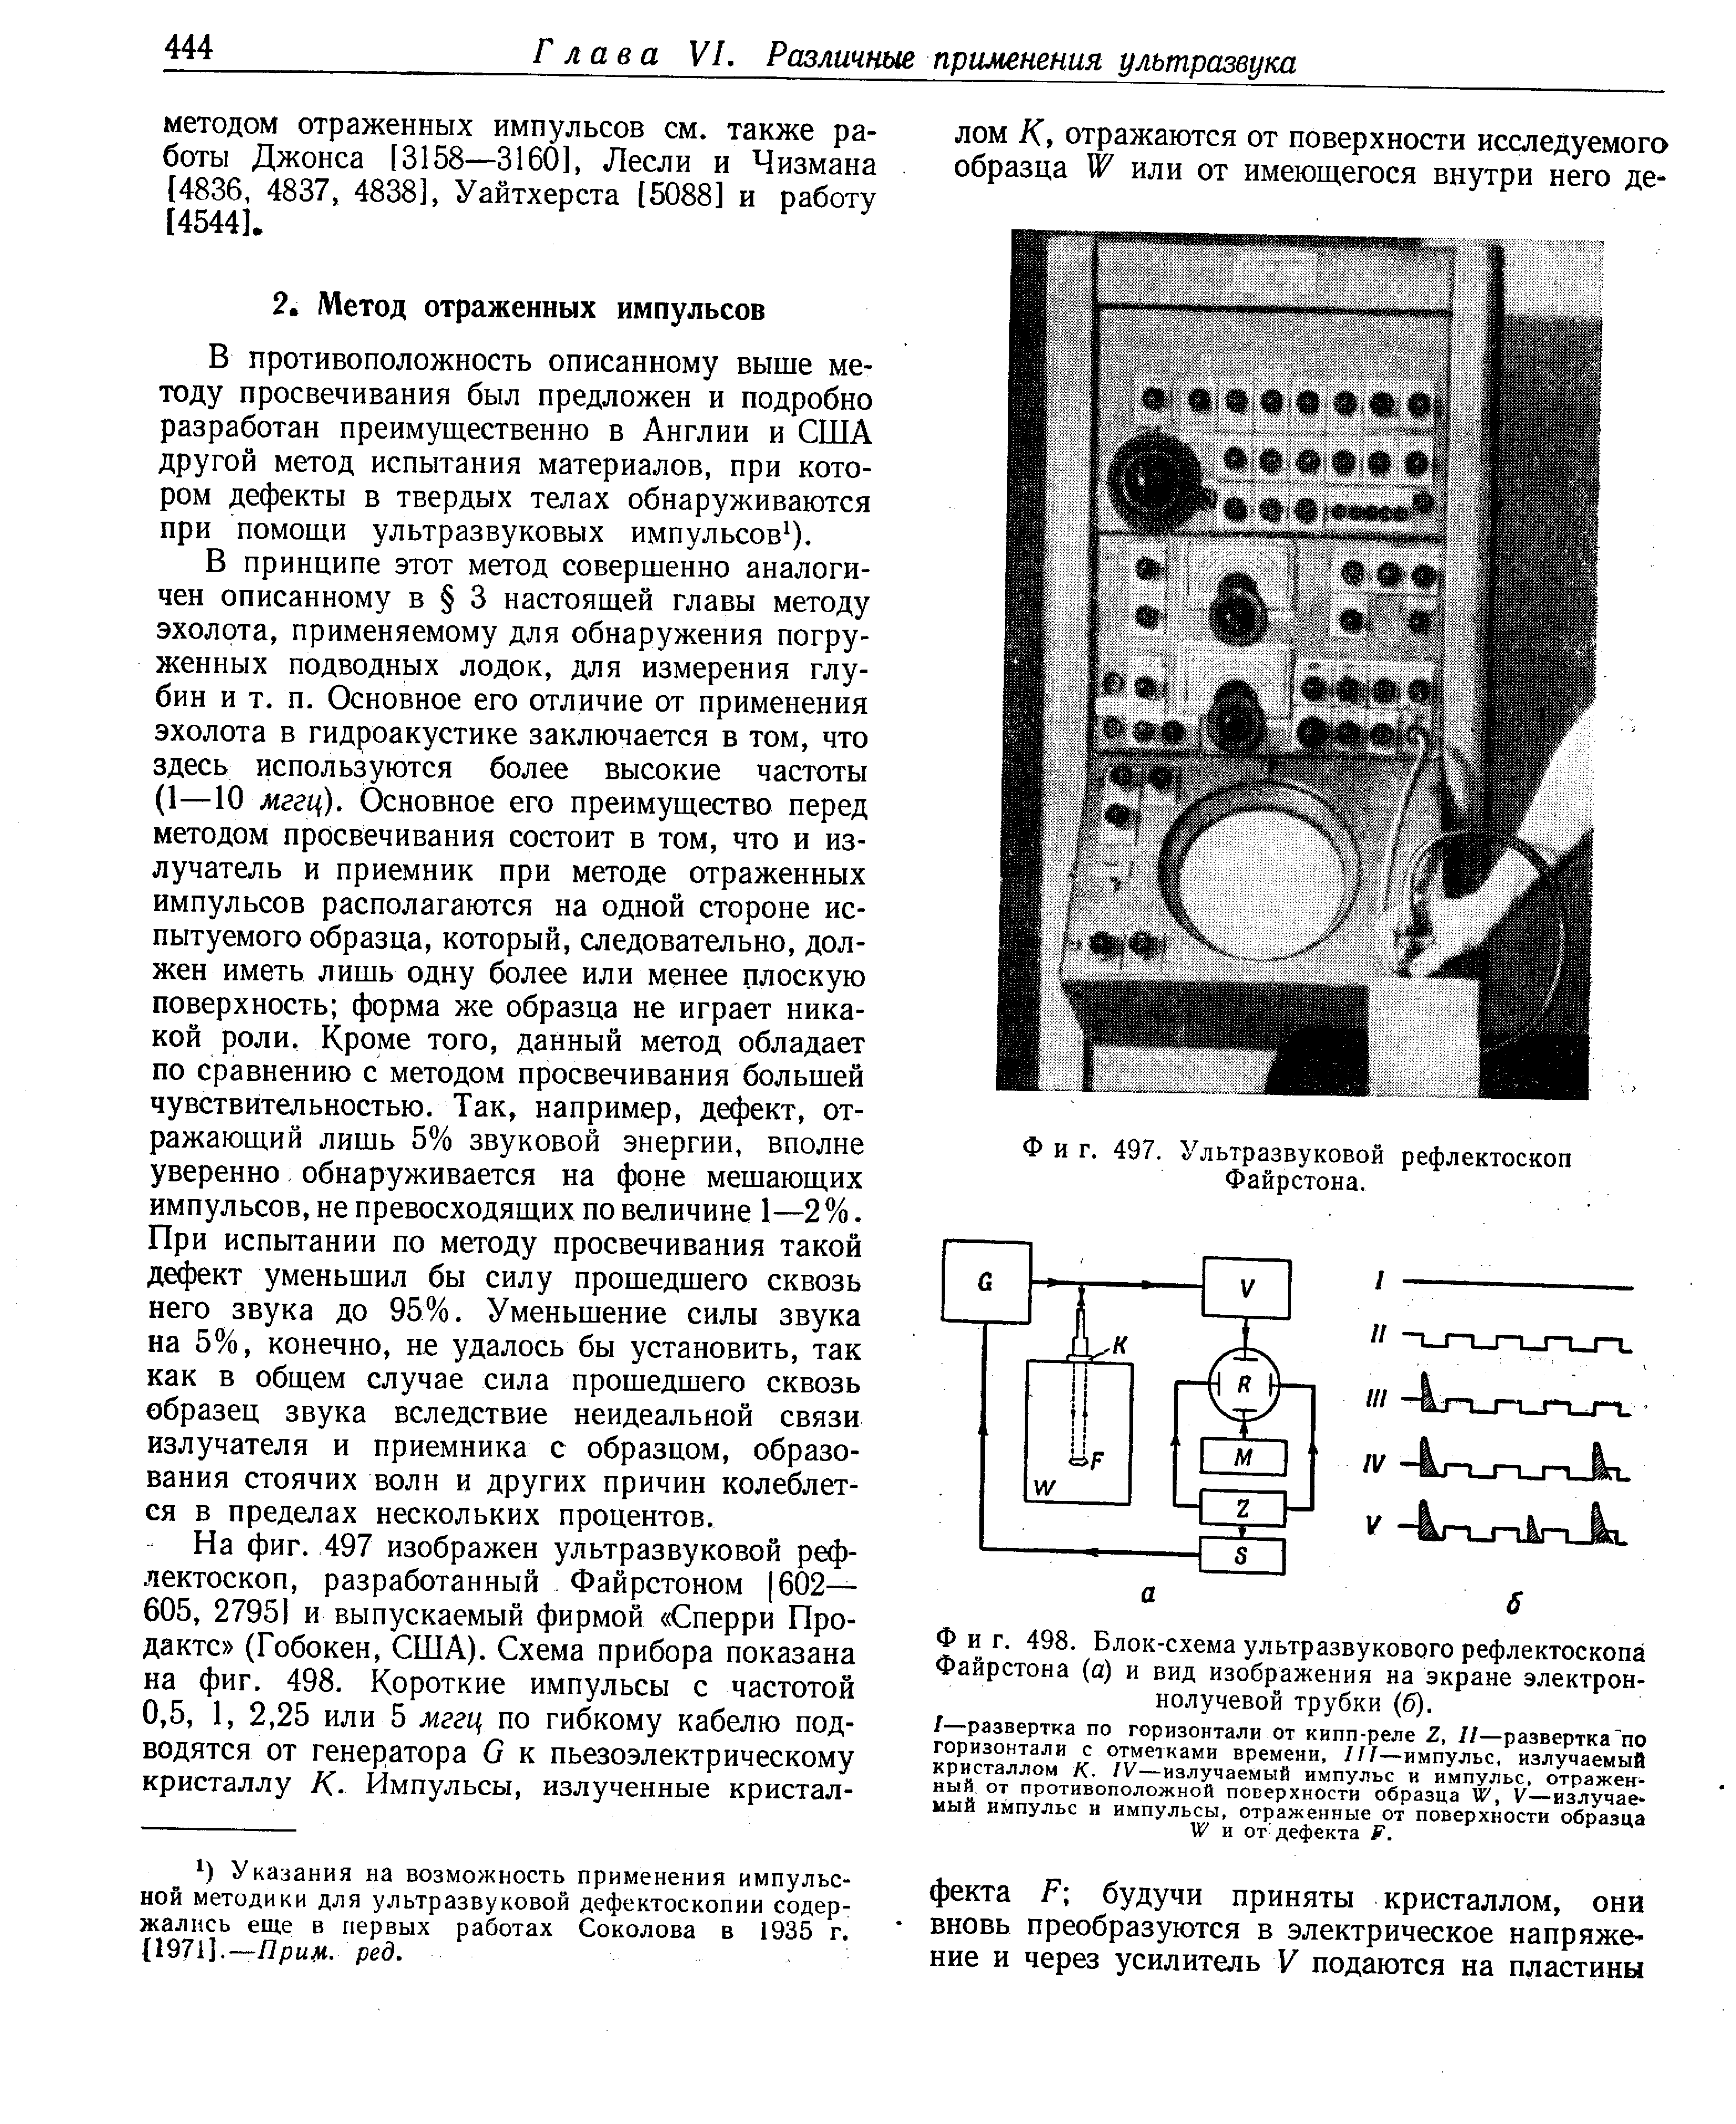 Фиг. 498. Блок-схема ультразвукового рефлектоскопа Файрстона (а) и вид изображения на экране электроннолучевой трубки (б).
